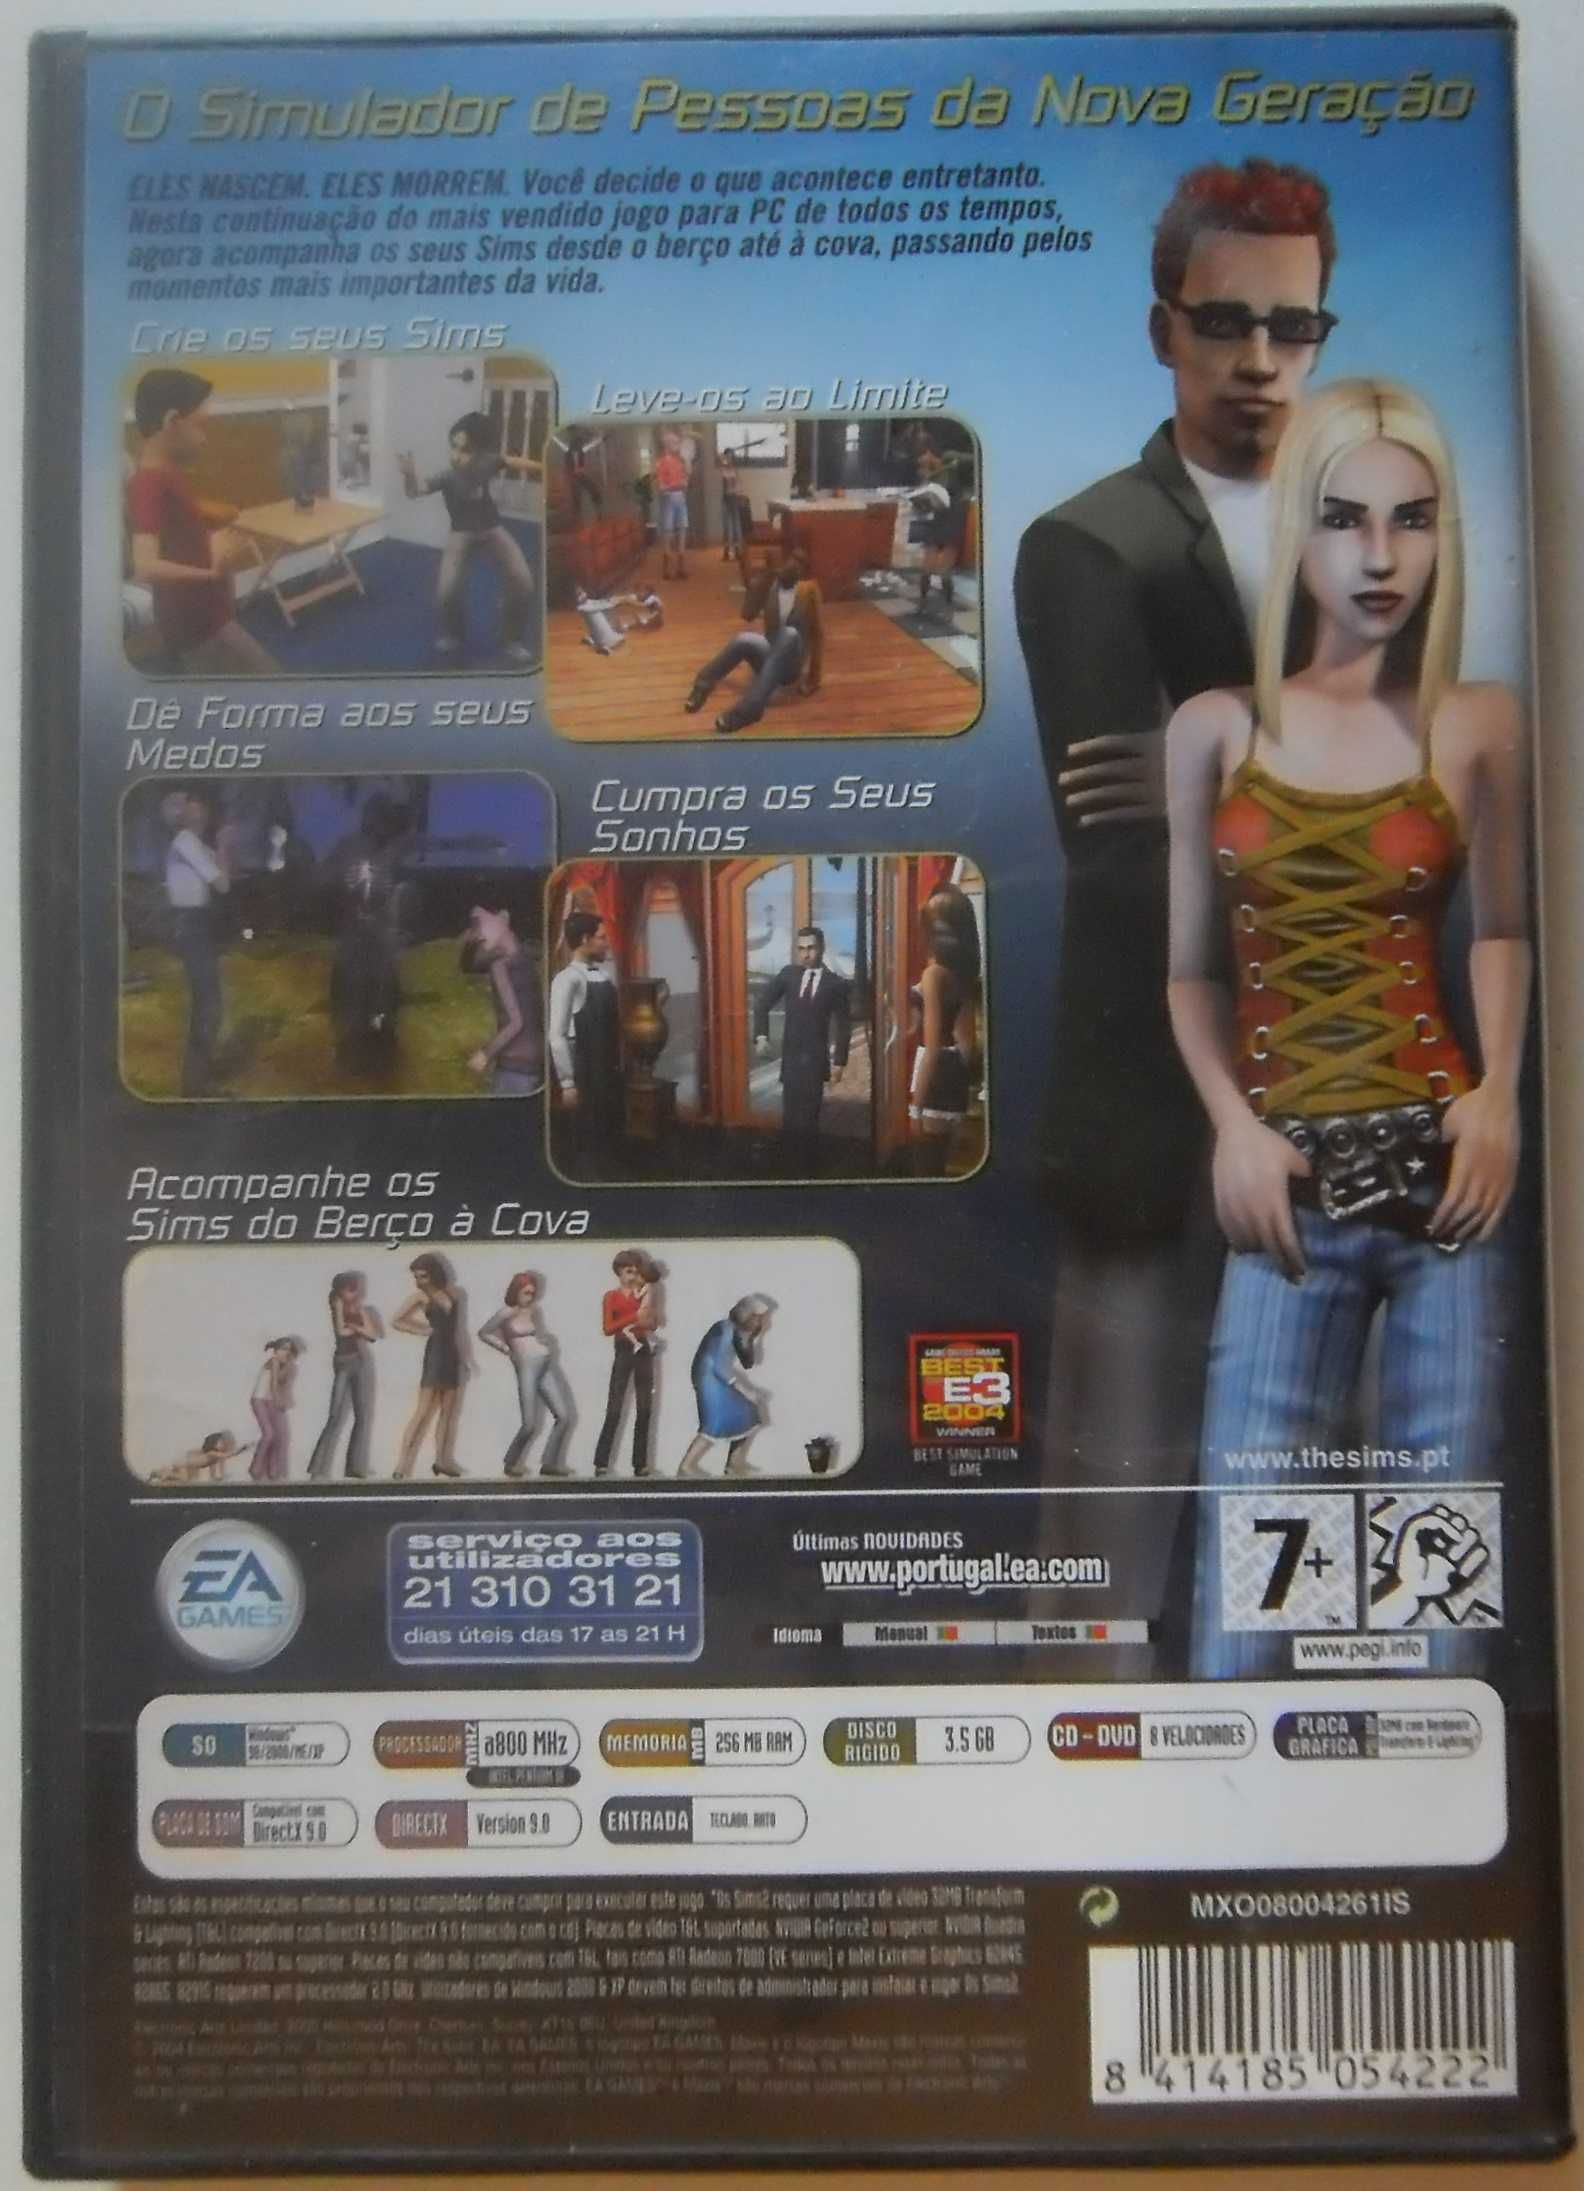 Jogo PC/CD-ROM "Os Sims 2" 4 CD com 6 Packs Expansão - Em Português